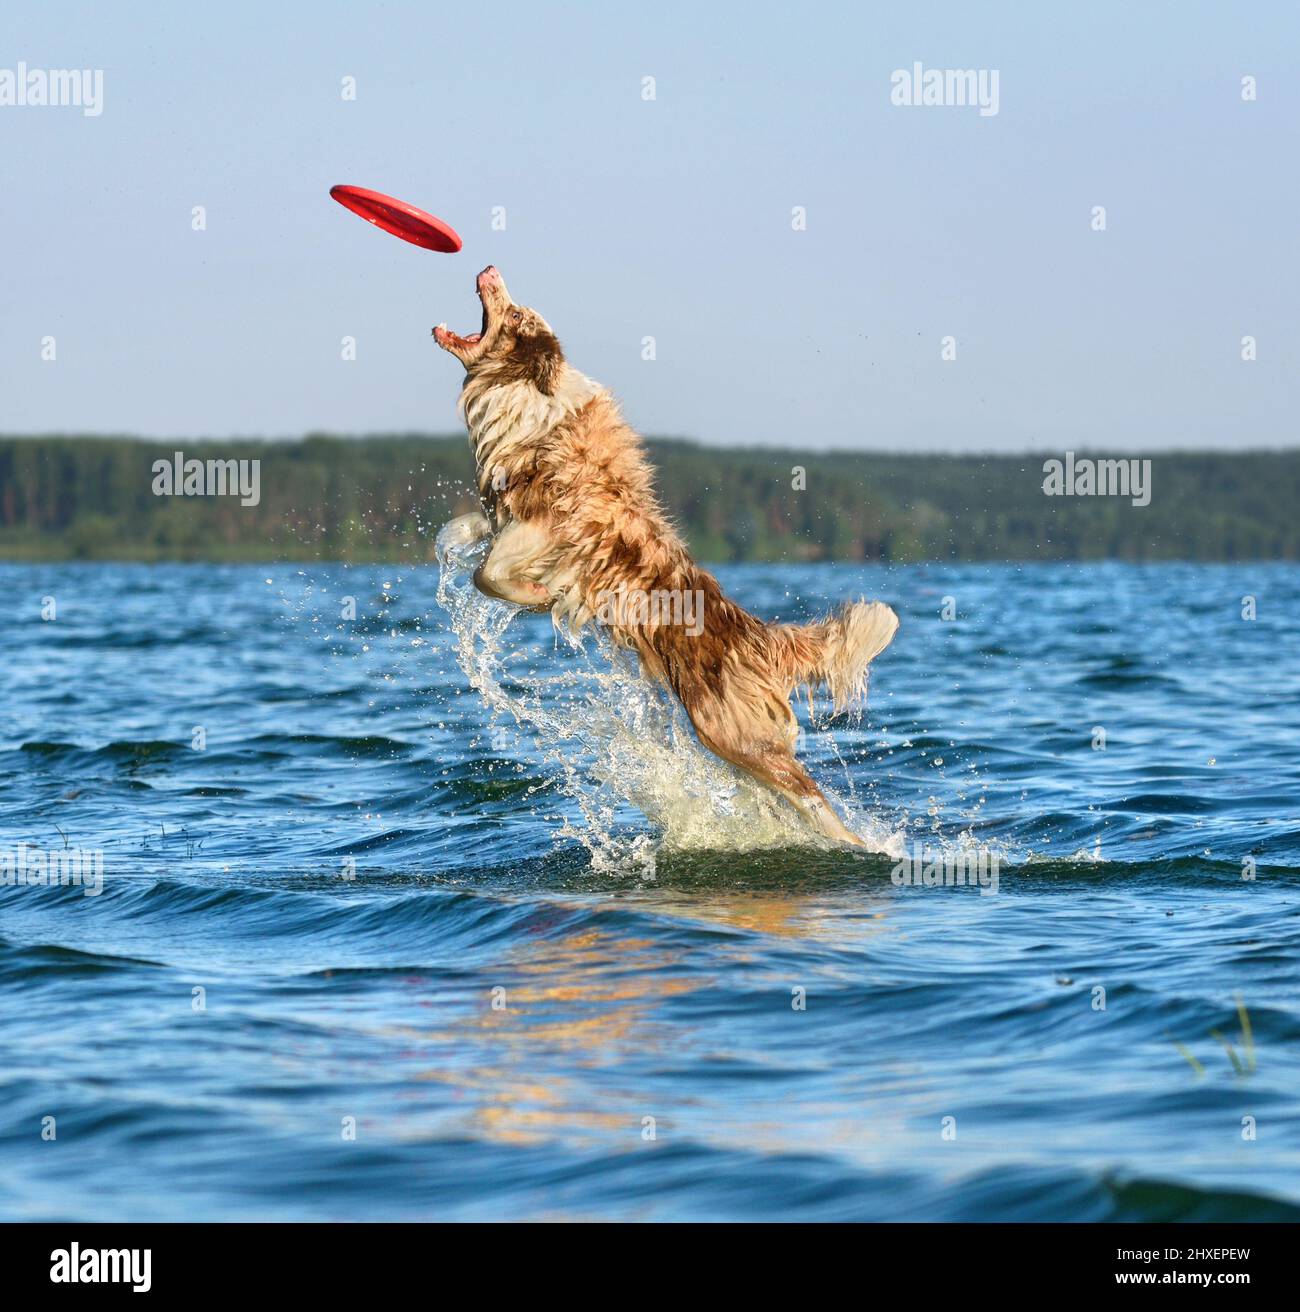 Perro Collie De Frontera En Salto Captura Frisbee Perro Juega En Closeup  Stock de ilustración - Ilustración de persona, gato: 271894025